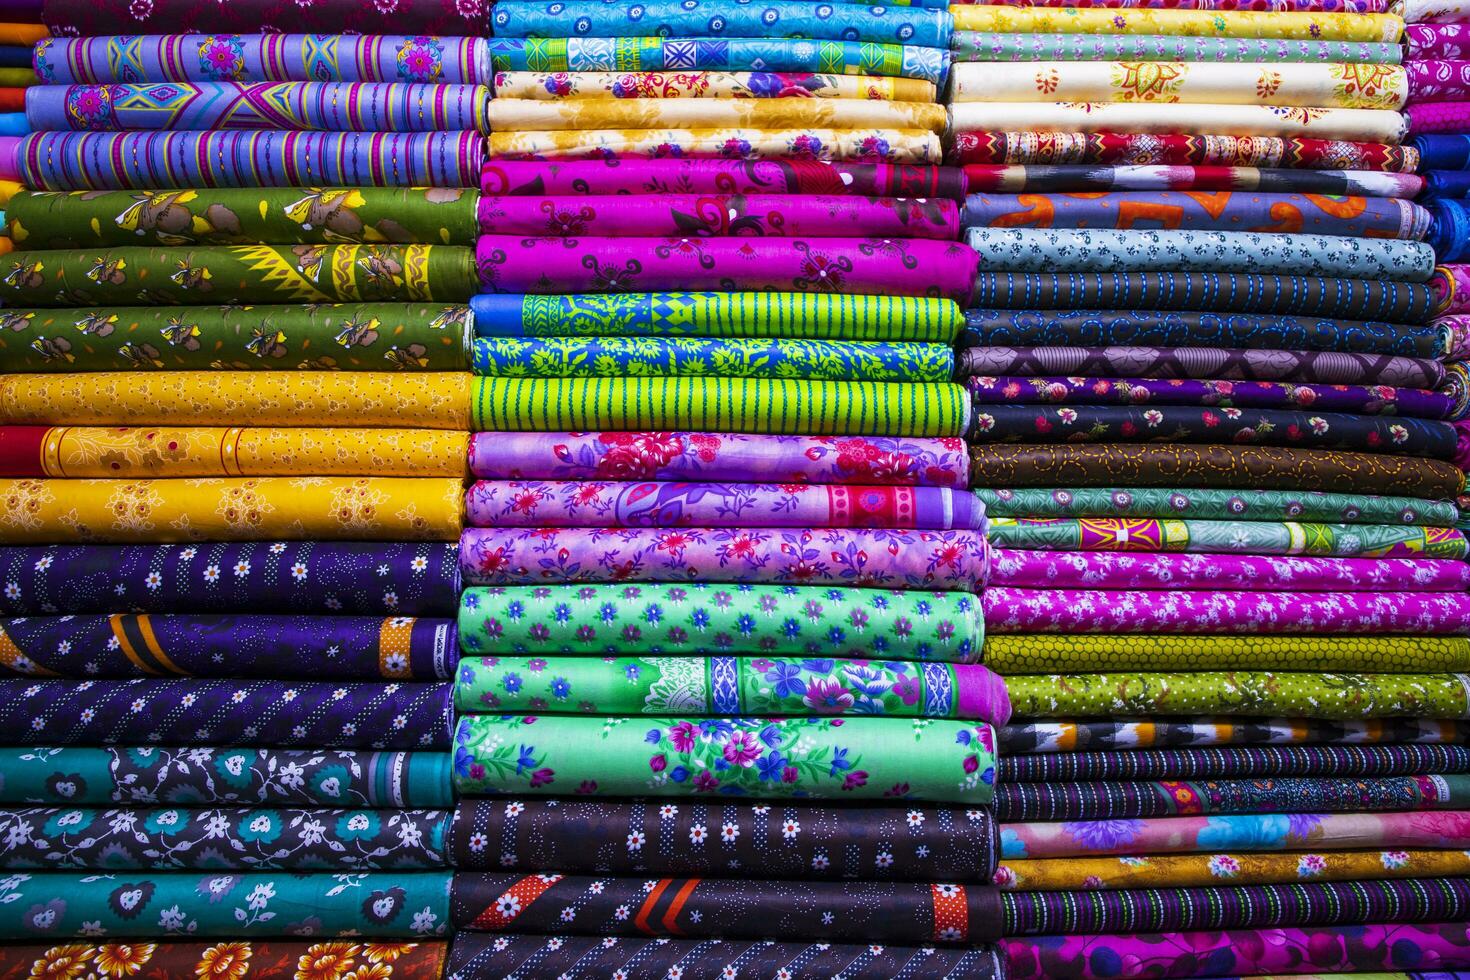 konstnärlig mängd skugga tona textil- tryckt färger tyger staplade på detaljhandeln affär hylla till försäljning foto